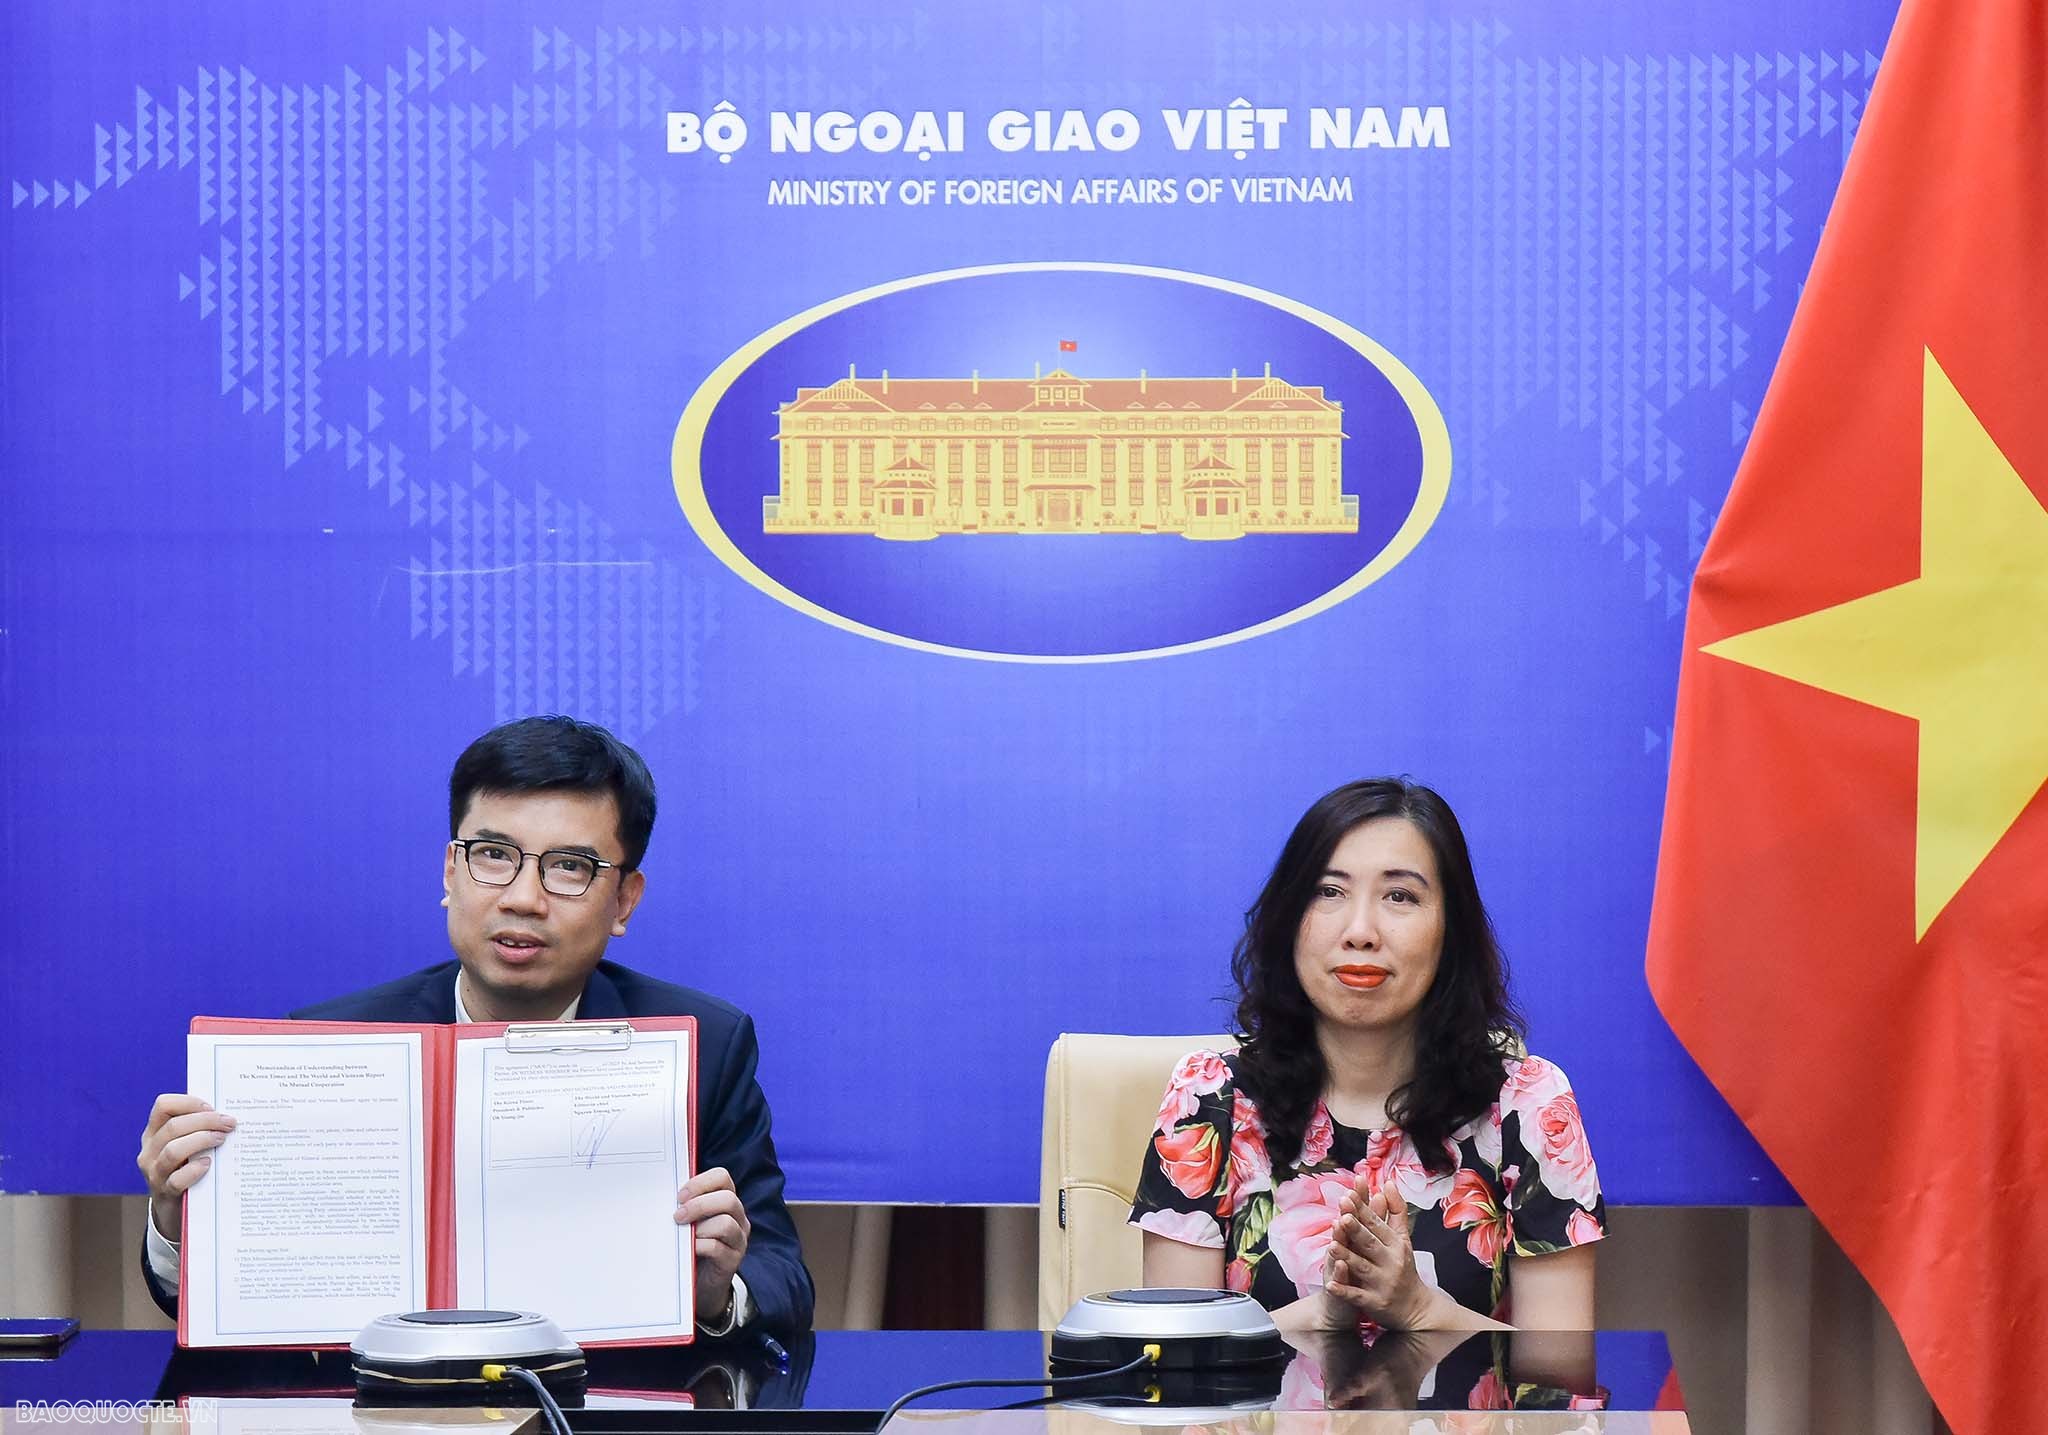 Báo Thế giới & Việt Nam và báo Korea Times ký kết thỏa thuận hợp tác